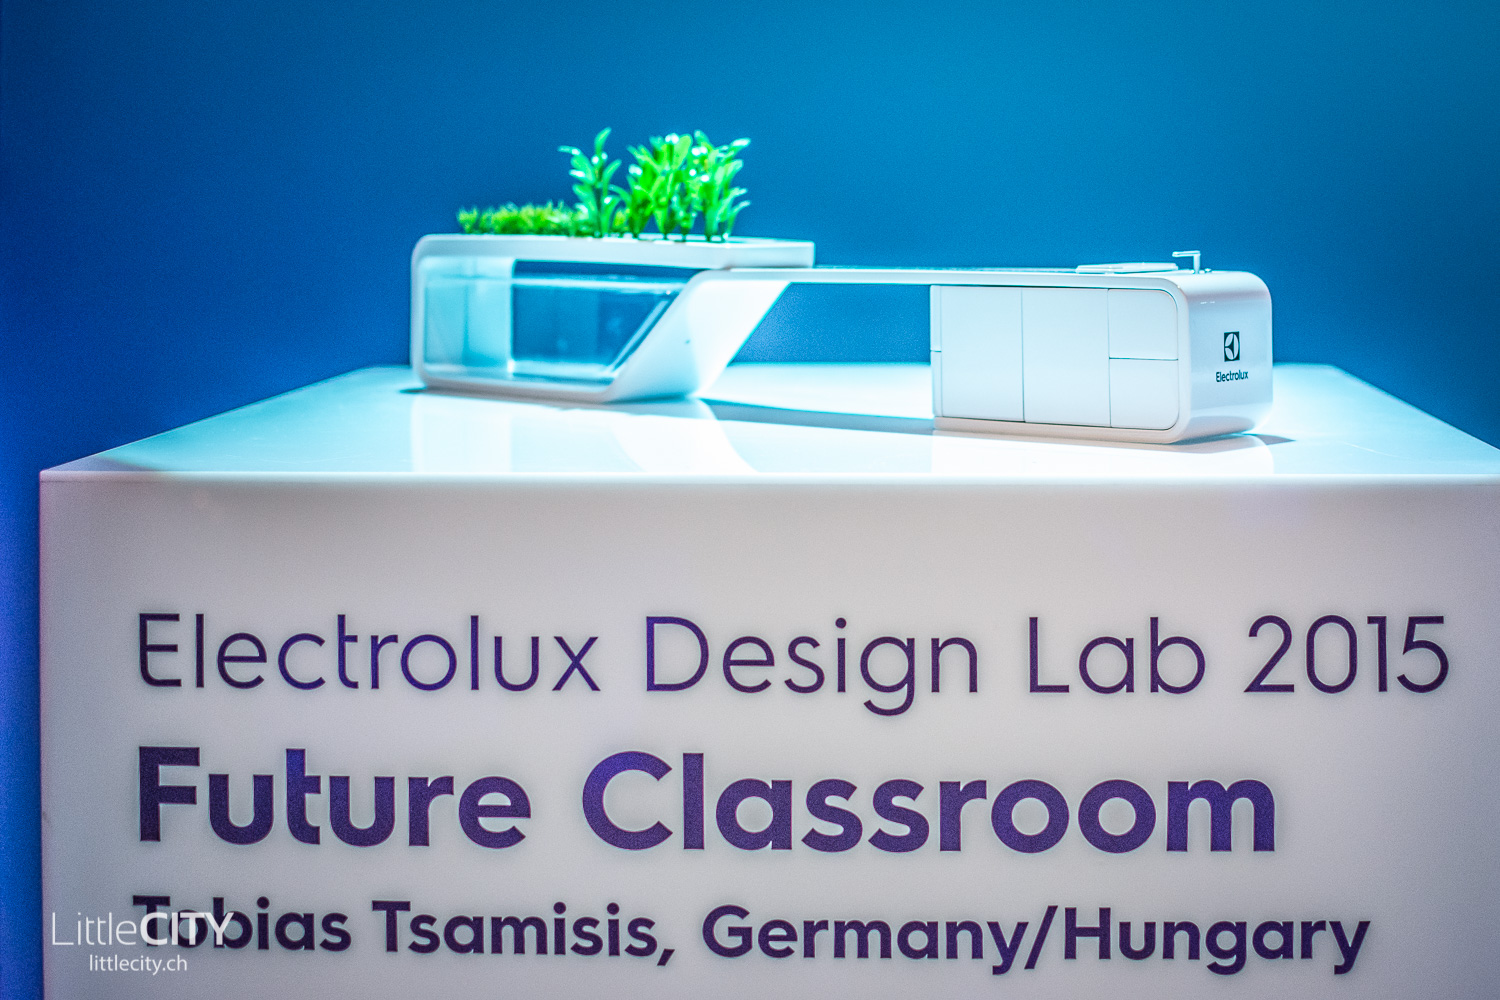 Electrolux Design Lab 2015 Helsinki